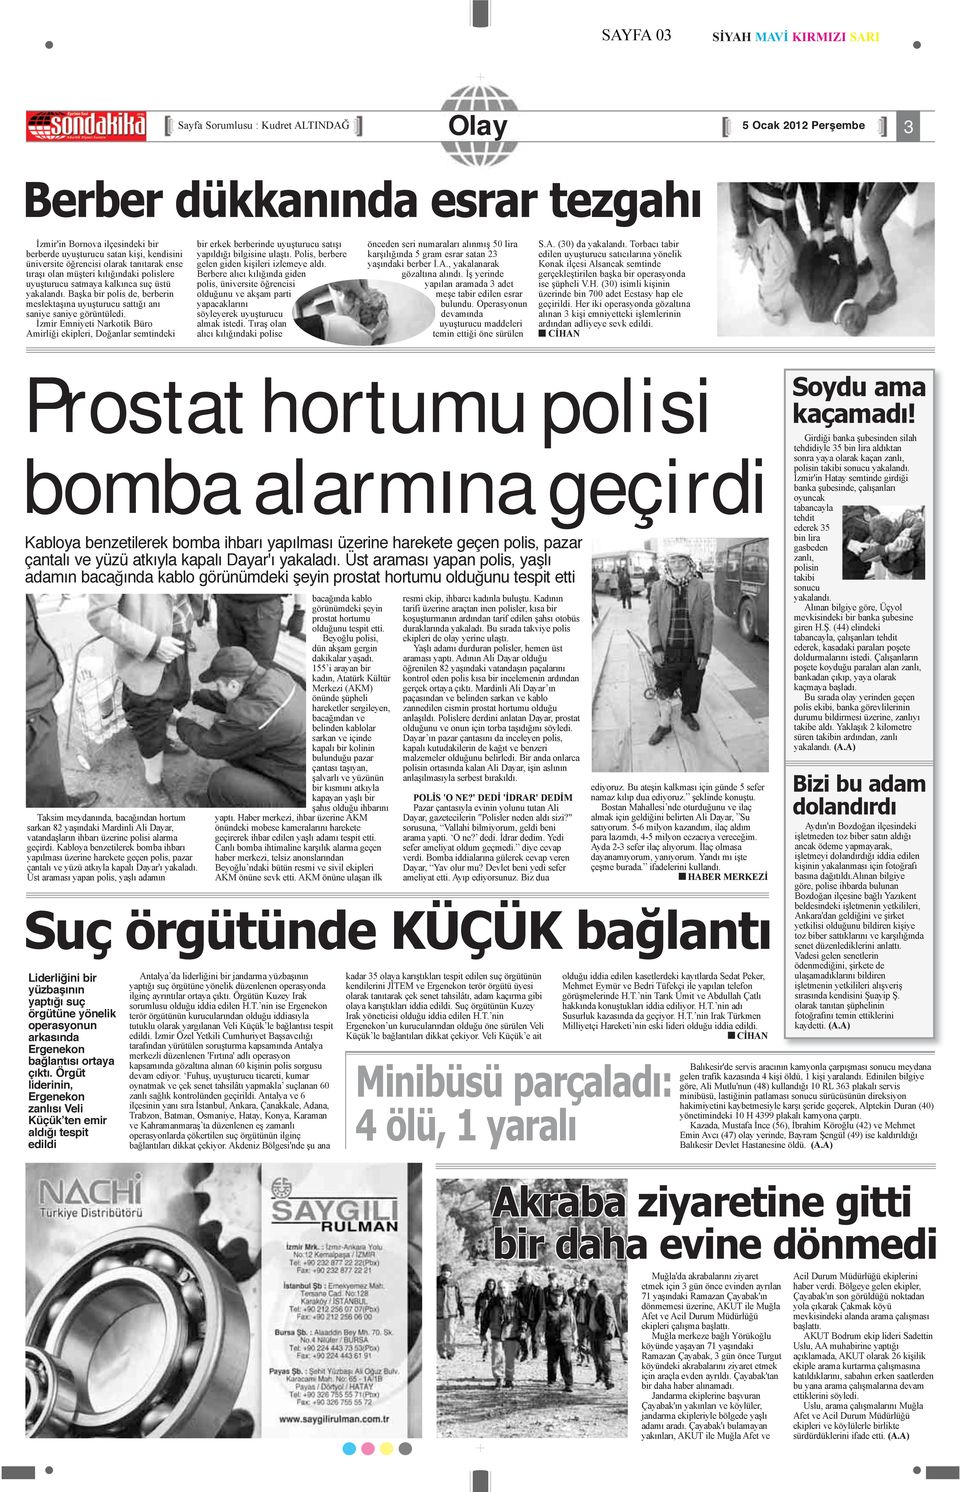 İzmir Emniyeti Narkotik Büro Amirliği ekipleri, Doğanlar semtindeki bir erkek berberinde uyuşturucu satışı yapıldığı bilgisine ulaştı. Polis, berbere gelen giden kişileri izlemeye aldı.